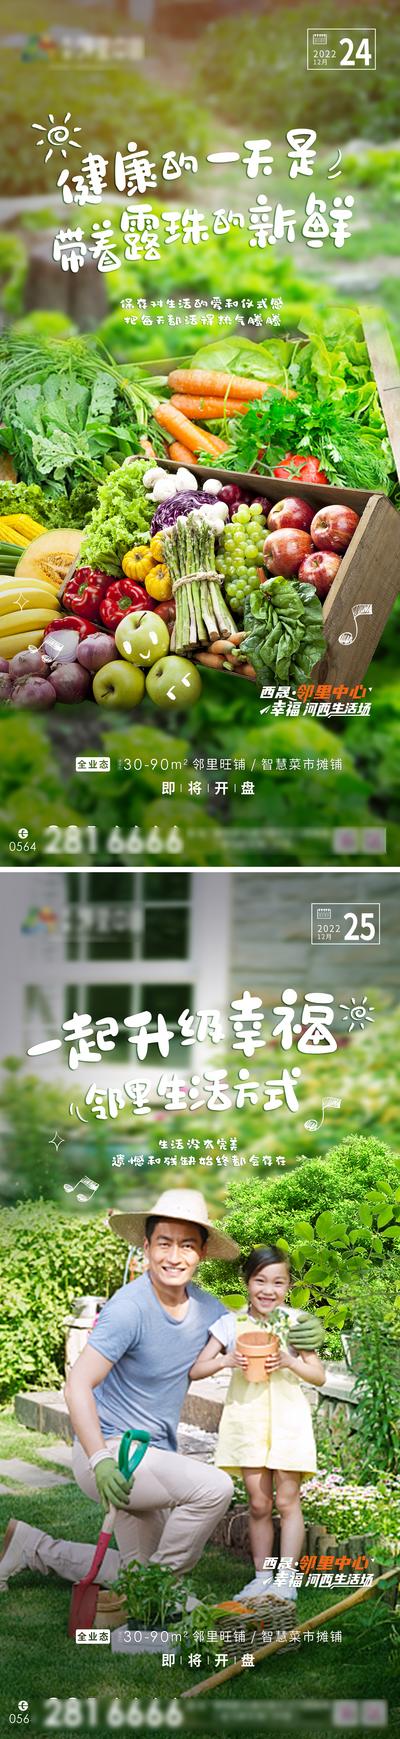 南门网 智慧绿色菜市场系列海报